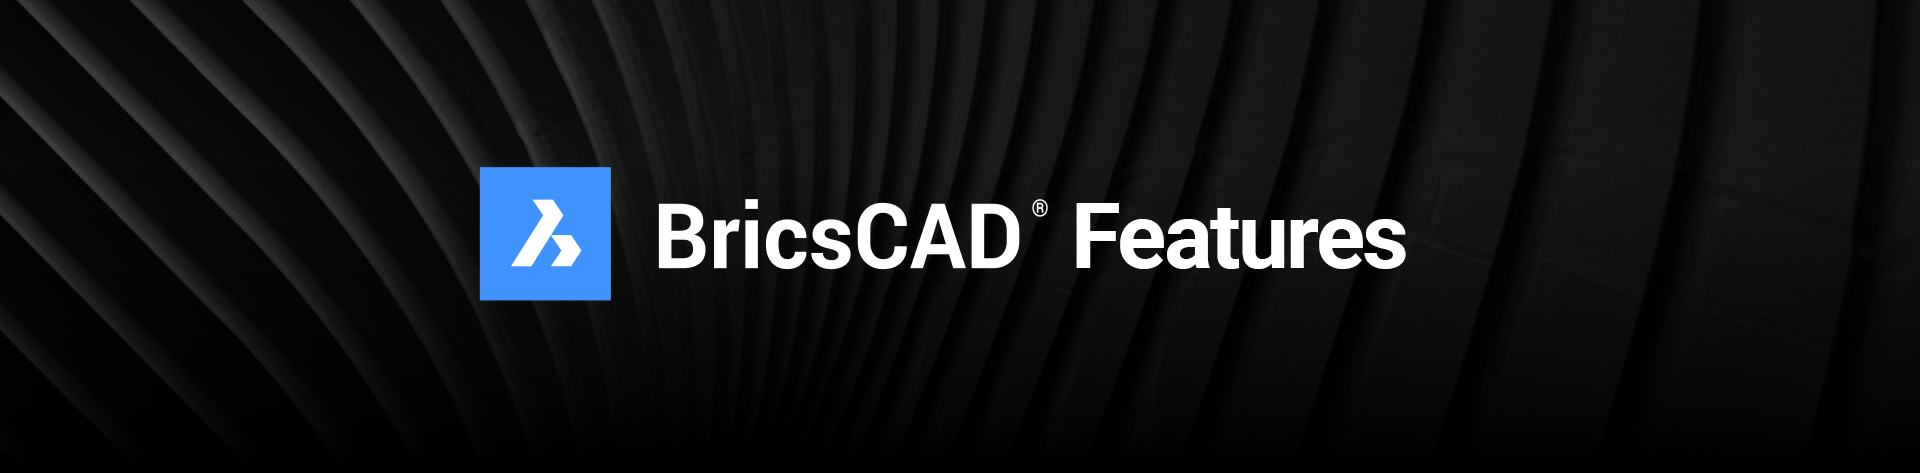 black background with BricsCAD logo